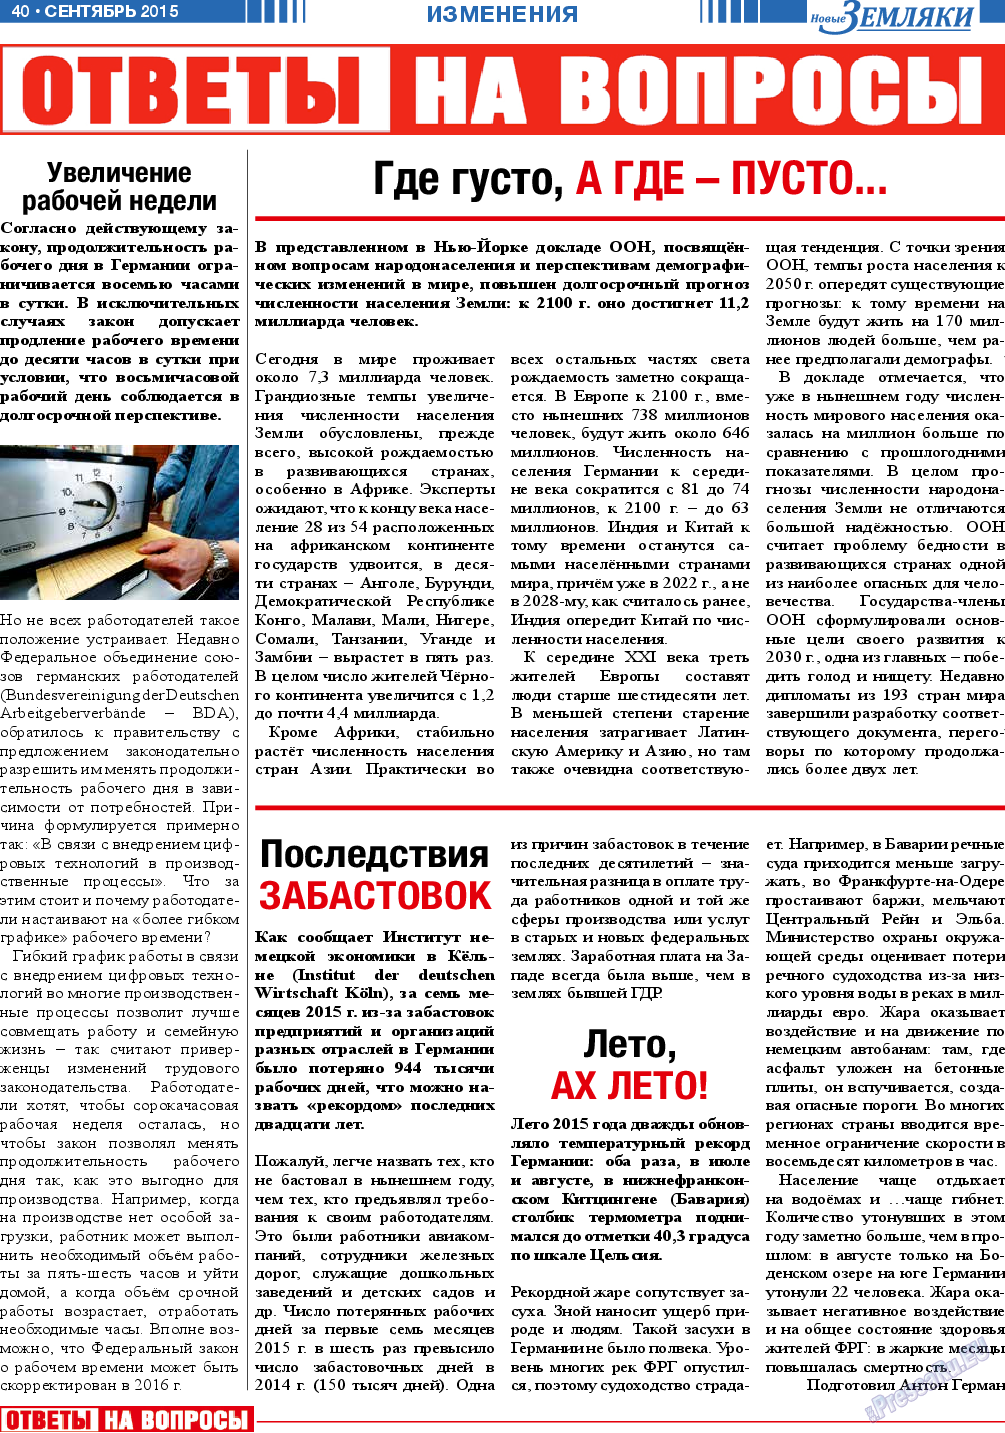 Новые Земляки, газета. 2015 №9 стр.40